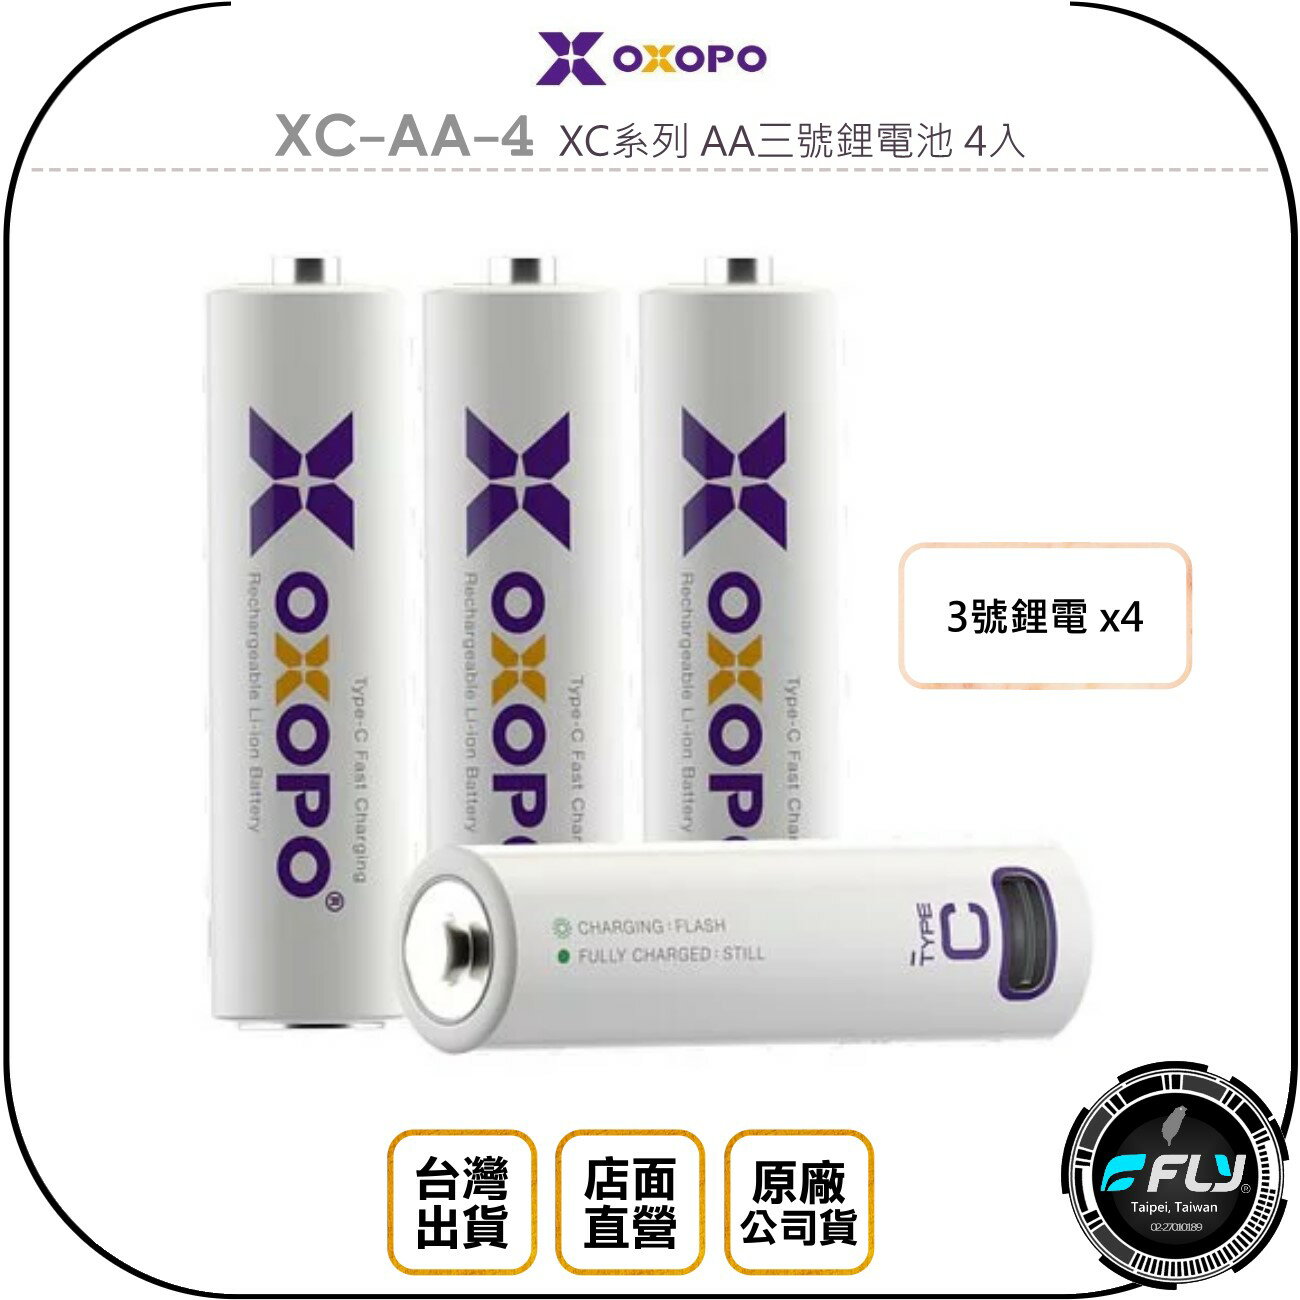 《飛翔無線3C》OXOPO XC-AA-4 XC系列 AA三號鋰電池 4入◉公司貨◉TYPE-C充電◉1.5V